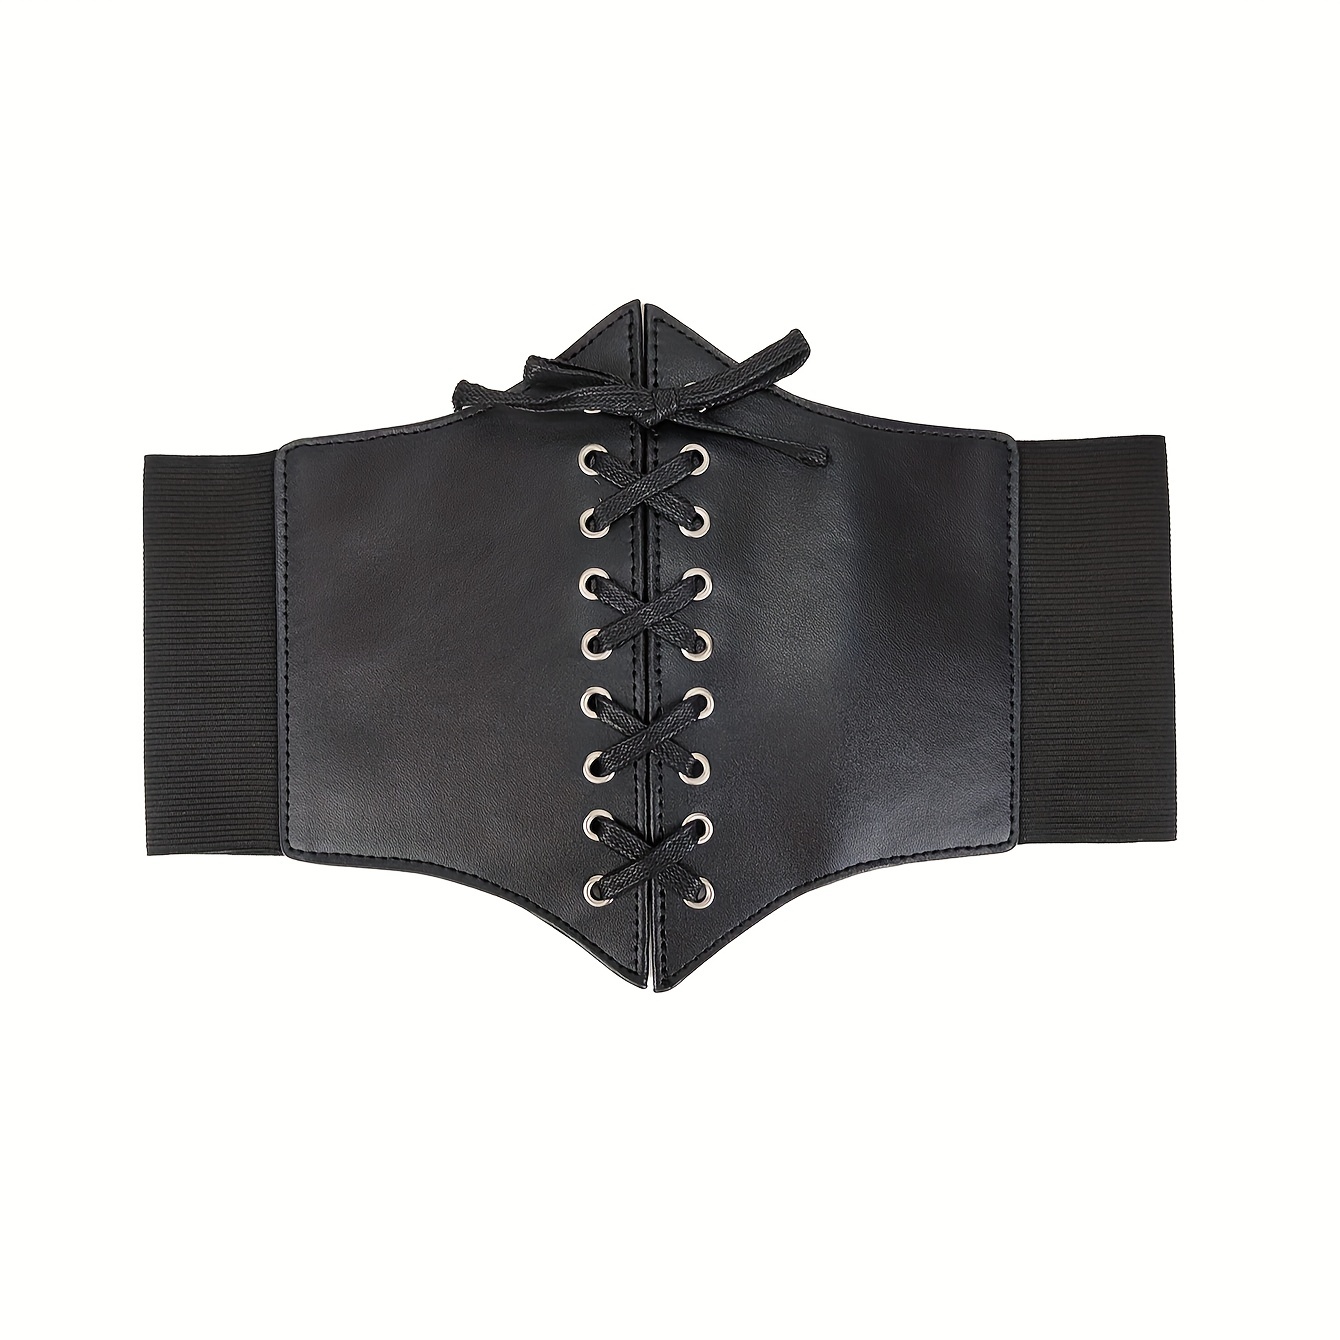 Black Corset Belt, Wide Belts for Women